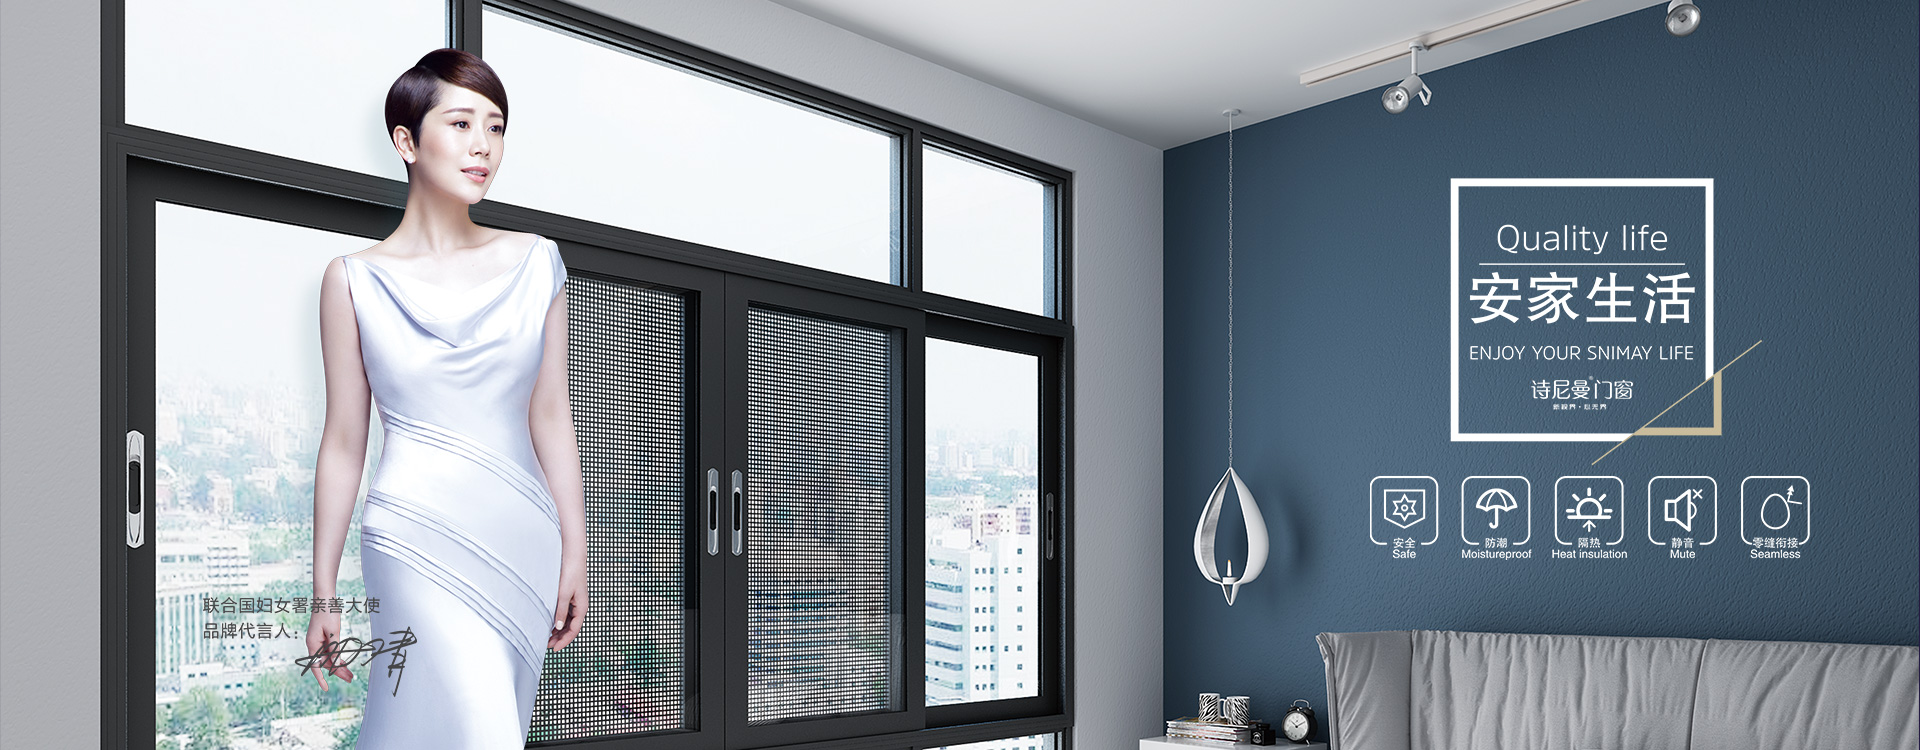 昆明锌钢门窗公司为大家分析几种常见的门窗安装问题